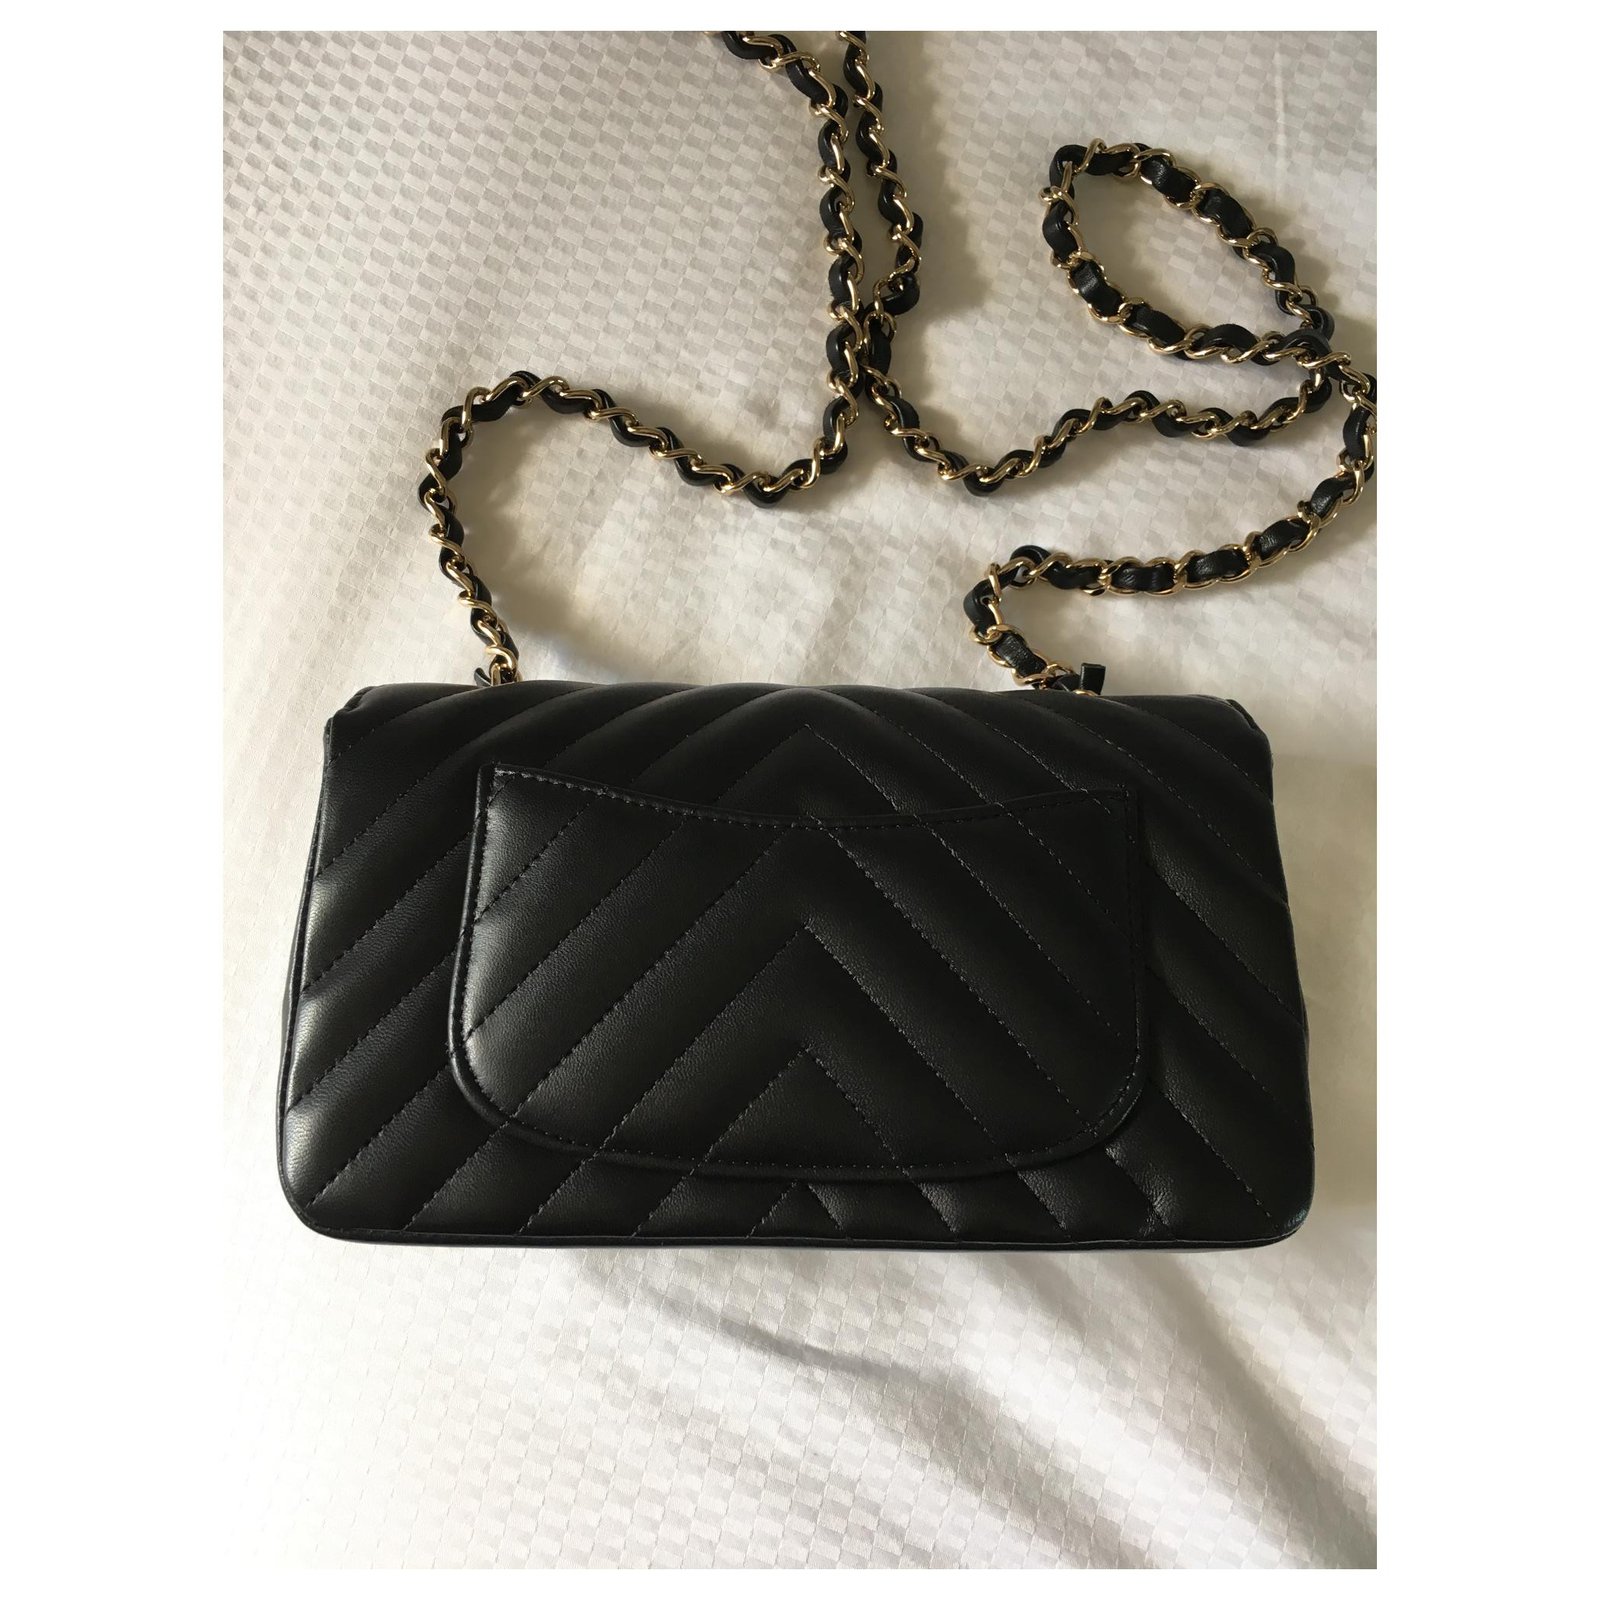 Chanel mini rectangular classic flap